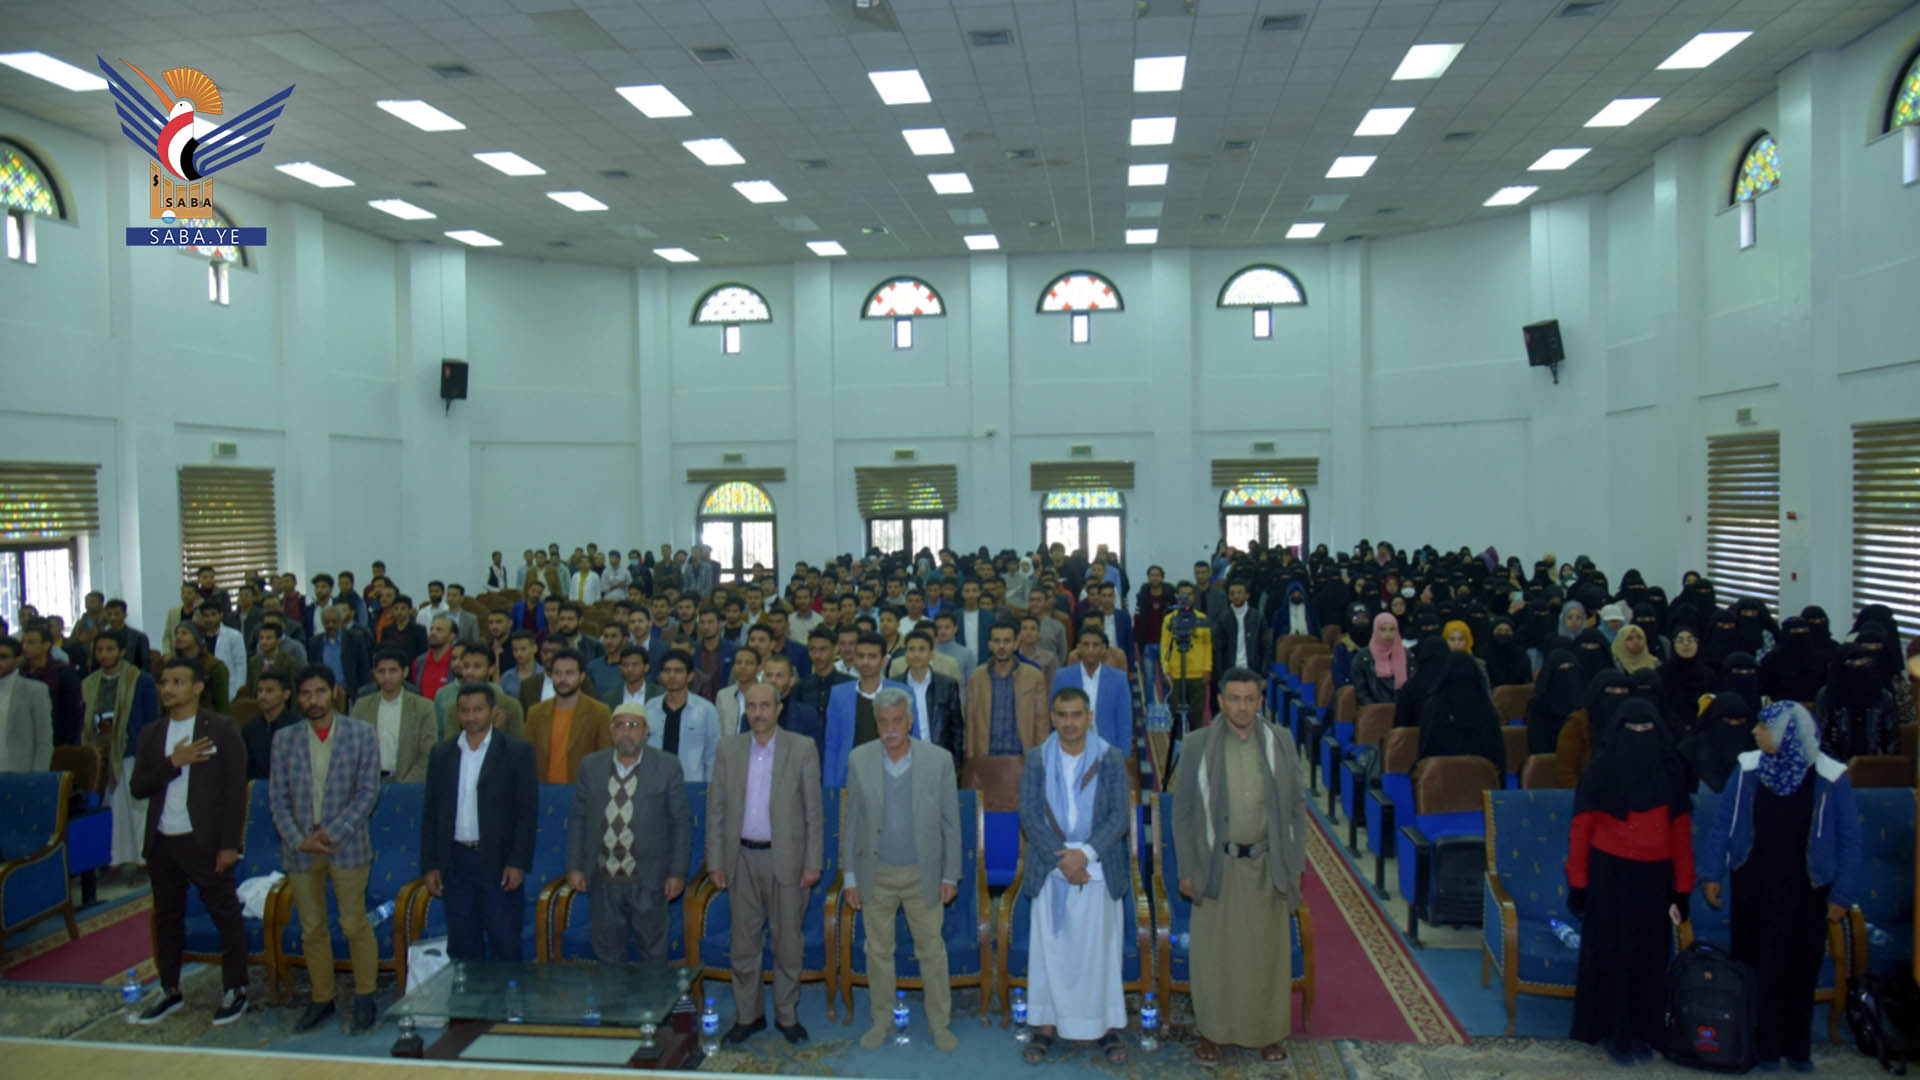 فعالية خطابية ووقفة تضامنية مع الشعب الفلسطيني بجامعة صنعاء